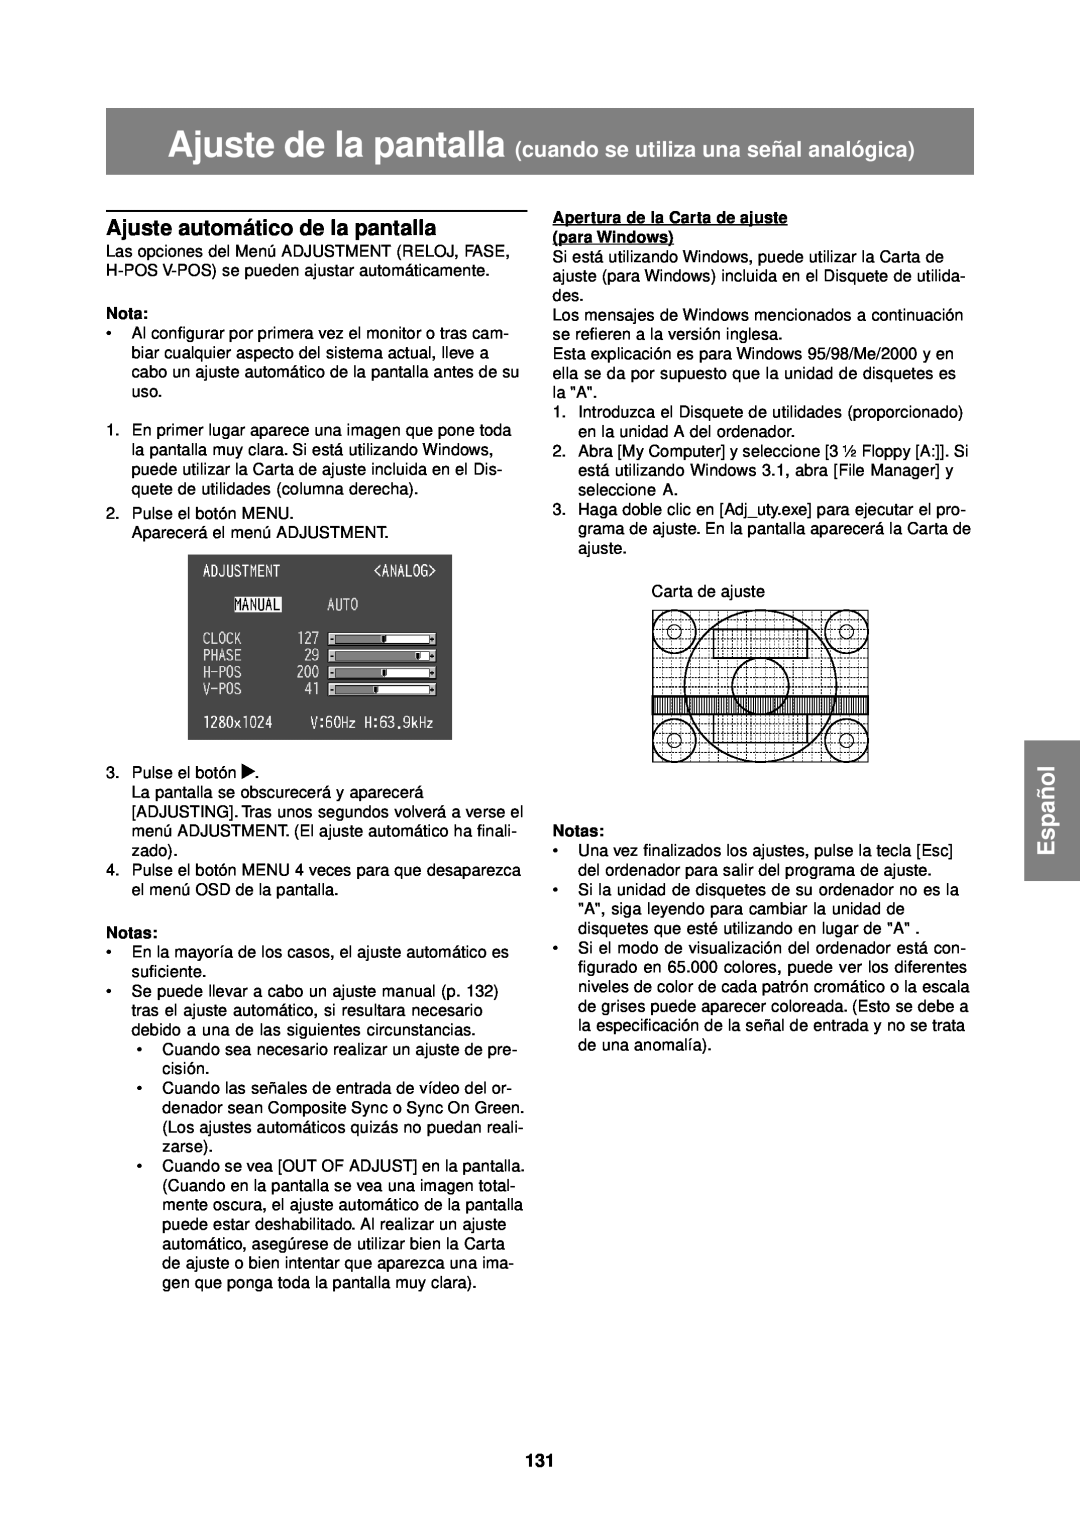 Sharp LL-T1610W Ajuste de la pantalla cuando se utiliza una señal analógica, Ajuste automático de la pantalla, Español 